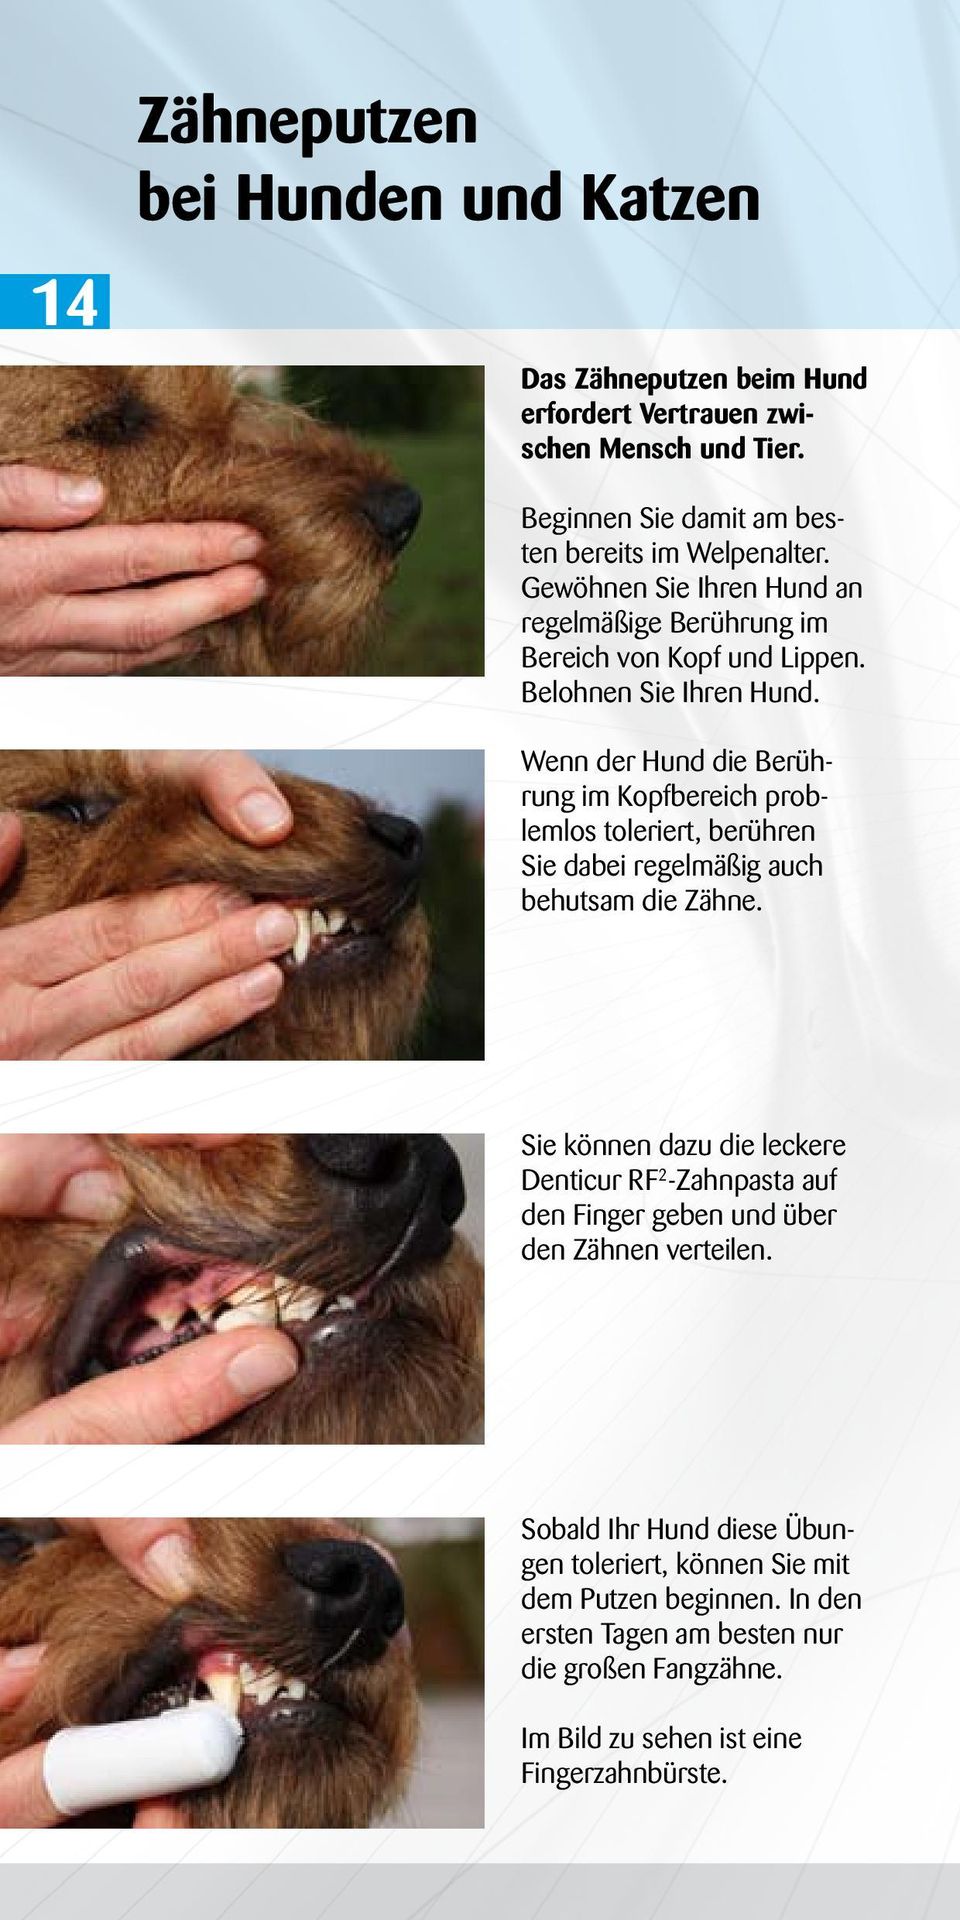 Wenn der Hund die Berührung im Kopfbereich problemlos toleriert, berühren Sie dabei regelmäßig auch behutsam die Zähne.